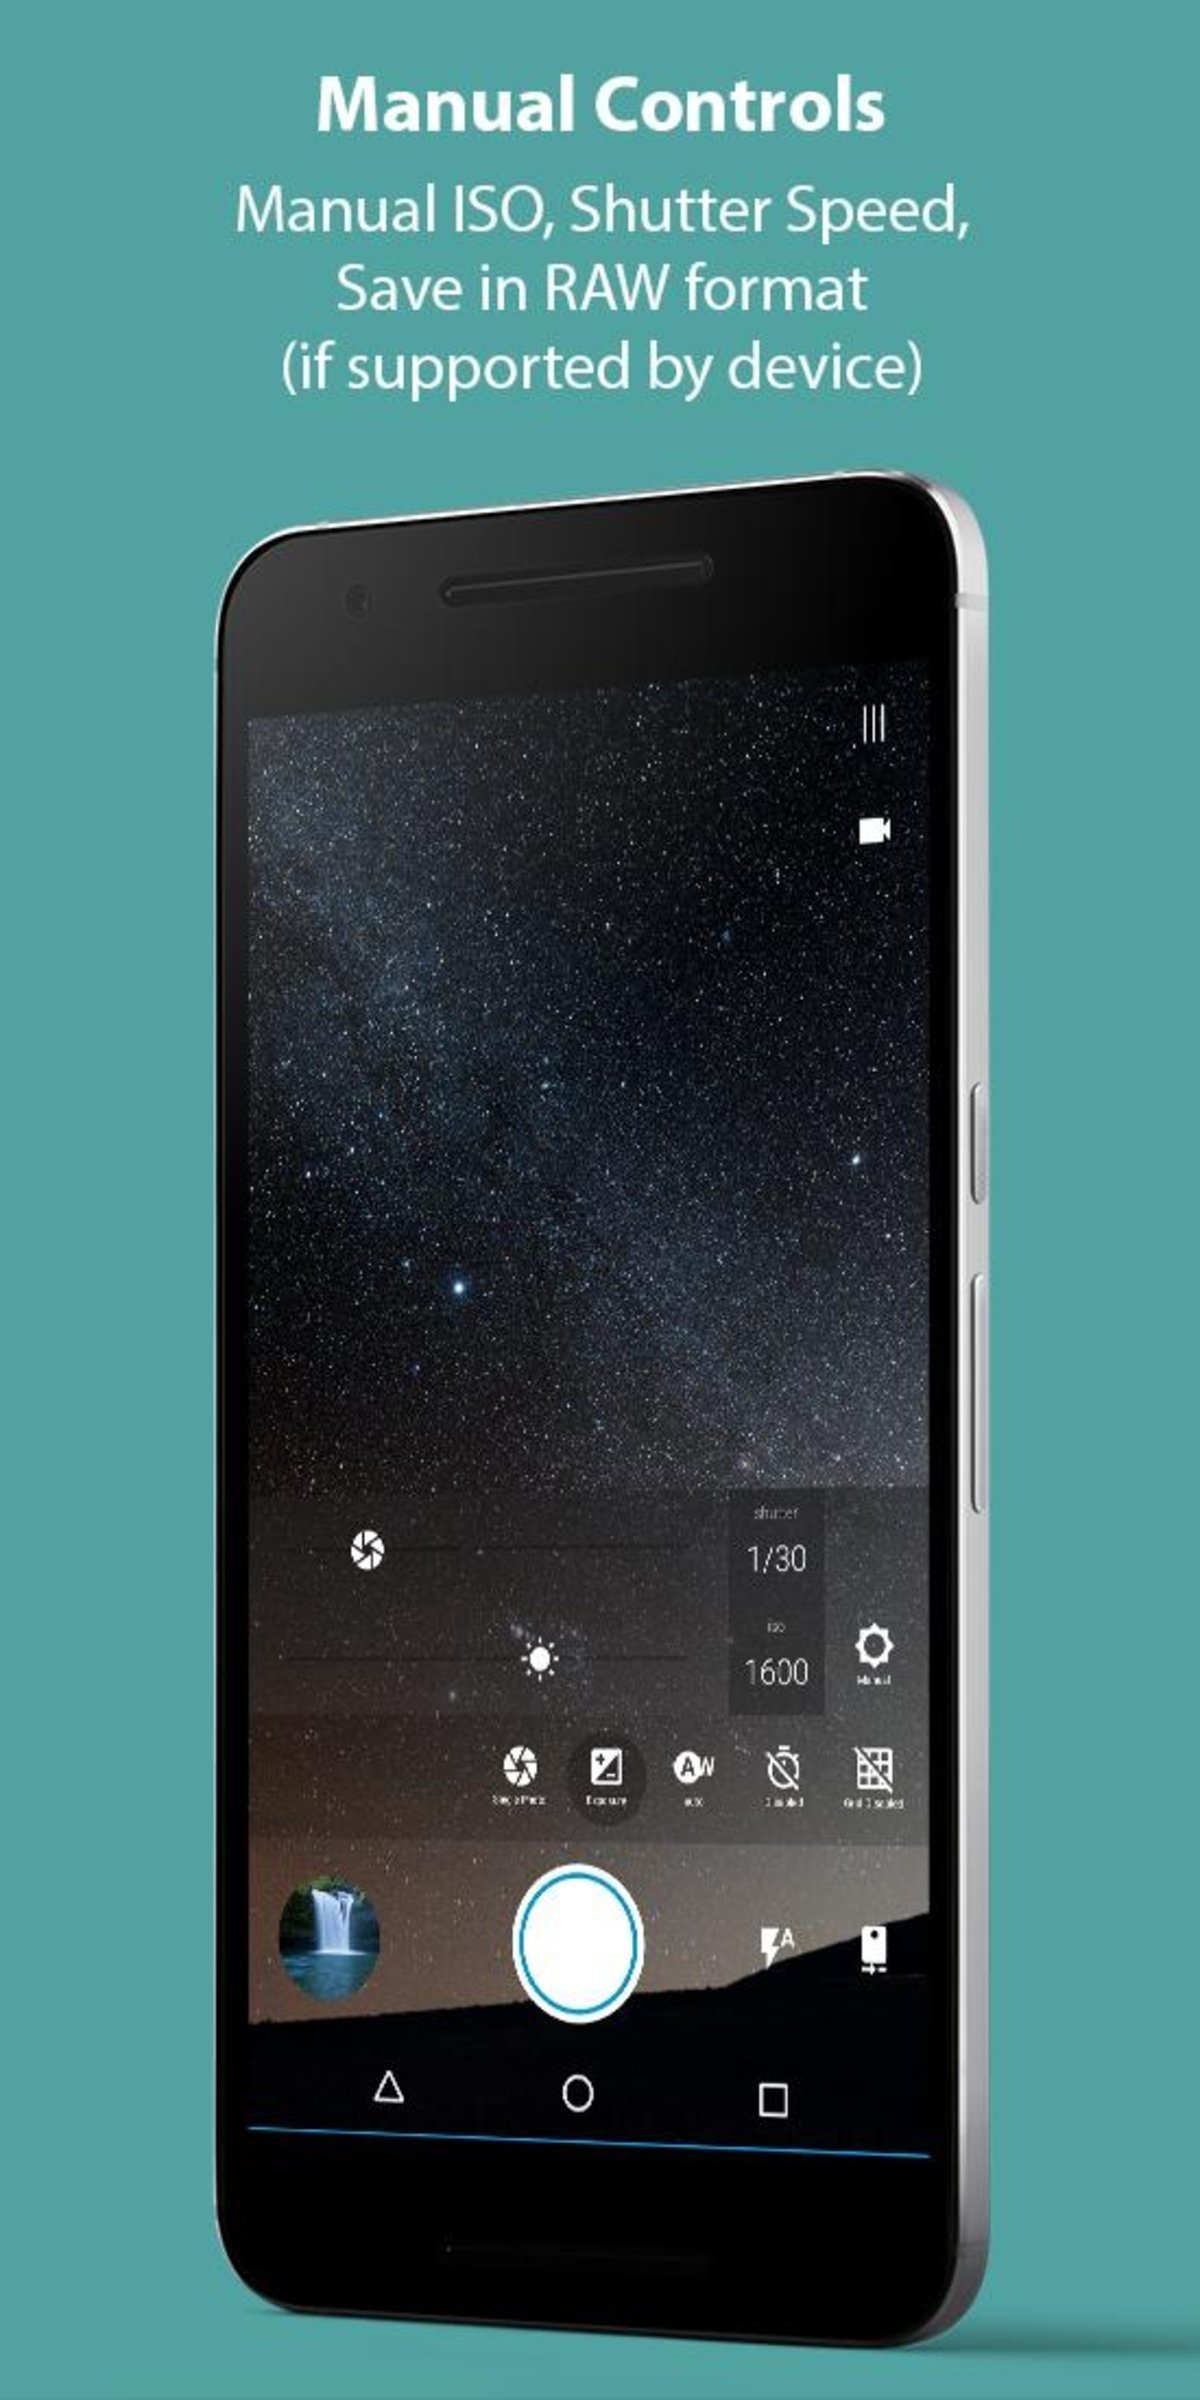 La mejor app de cámara para Android y 9 alternativas